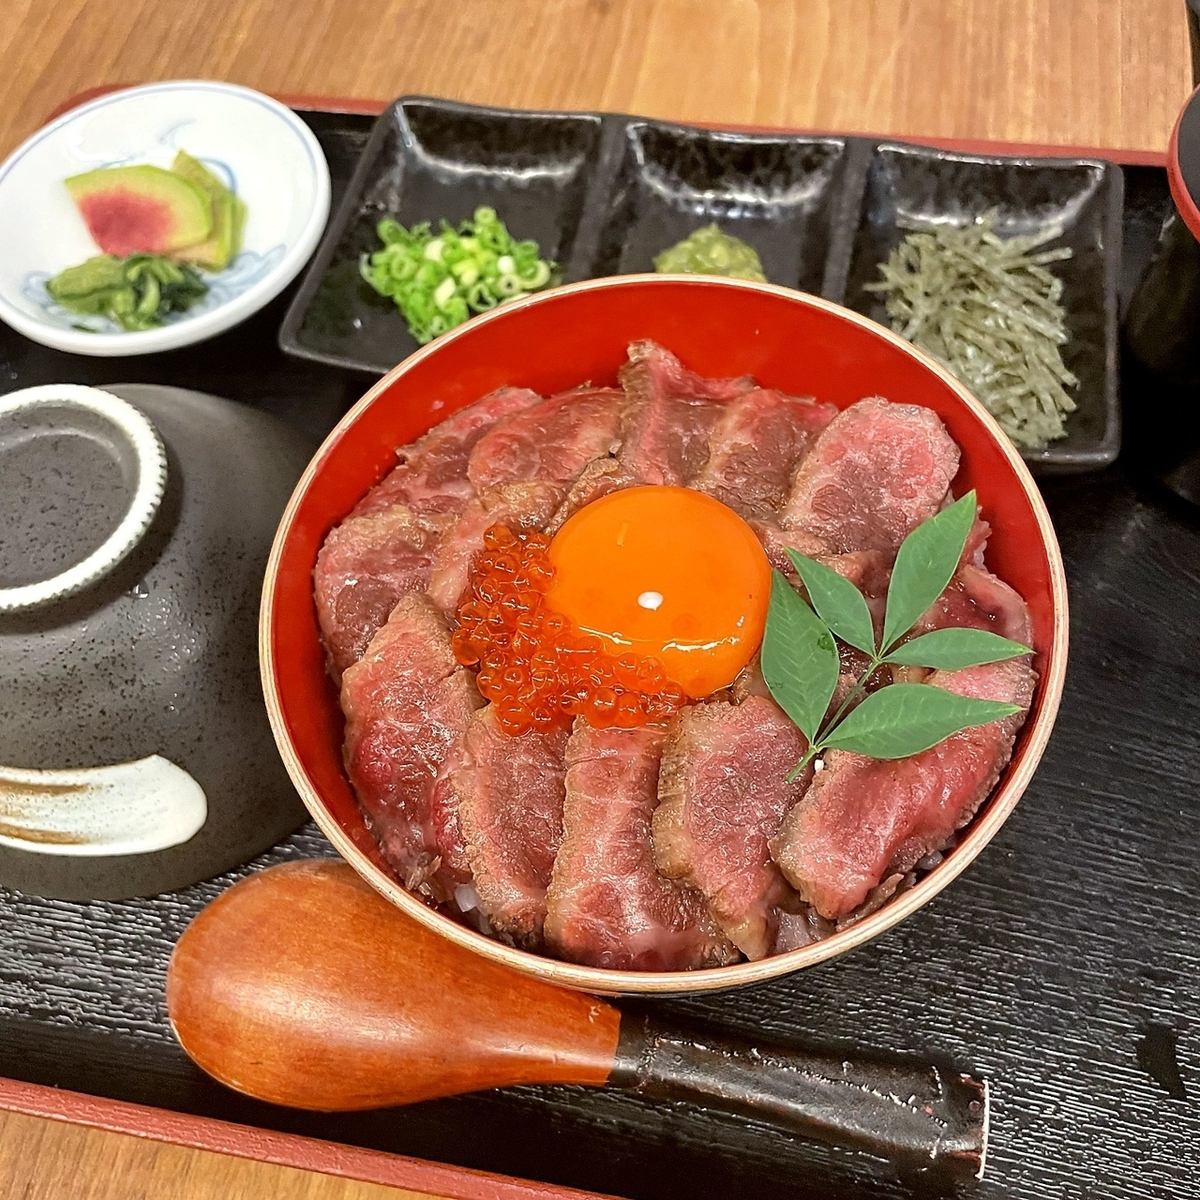 可以享用和牛、牡蠣的名產菜餚、日本酒、廣島鐵板燒的餐廳。